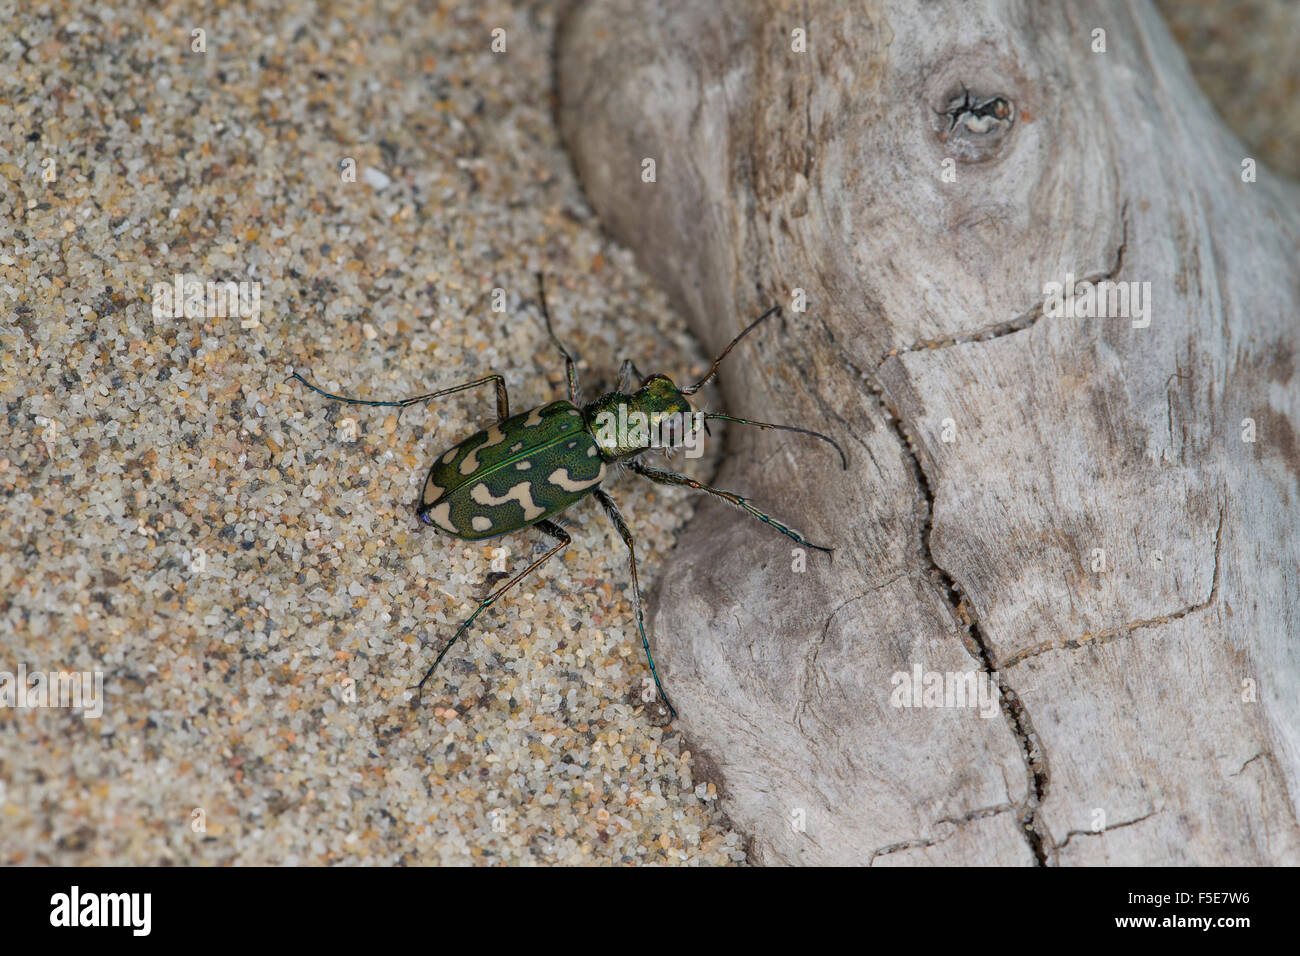 Tiger Beetle, Sandlaufkäfer, Sand-Laufkäfer, Lophyra flexuosa, Cicindela flexuosa, Cicindelidae, Tiger Beetles Stock Photo